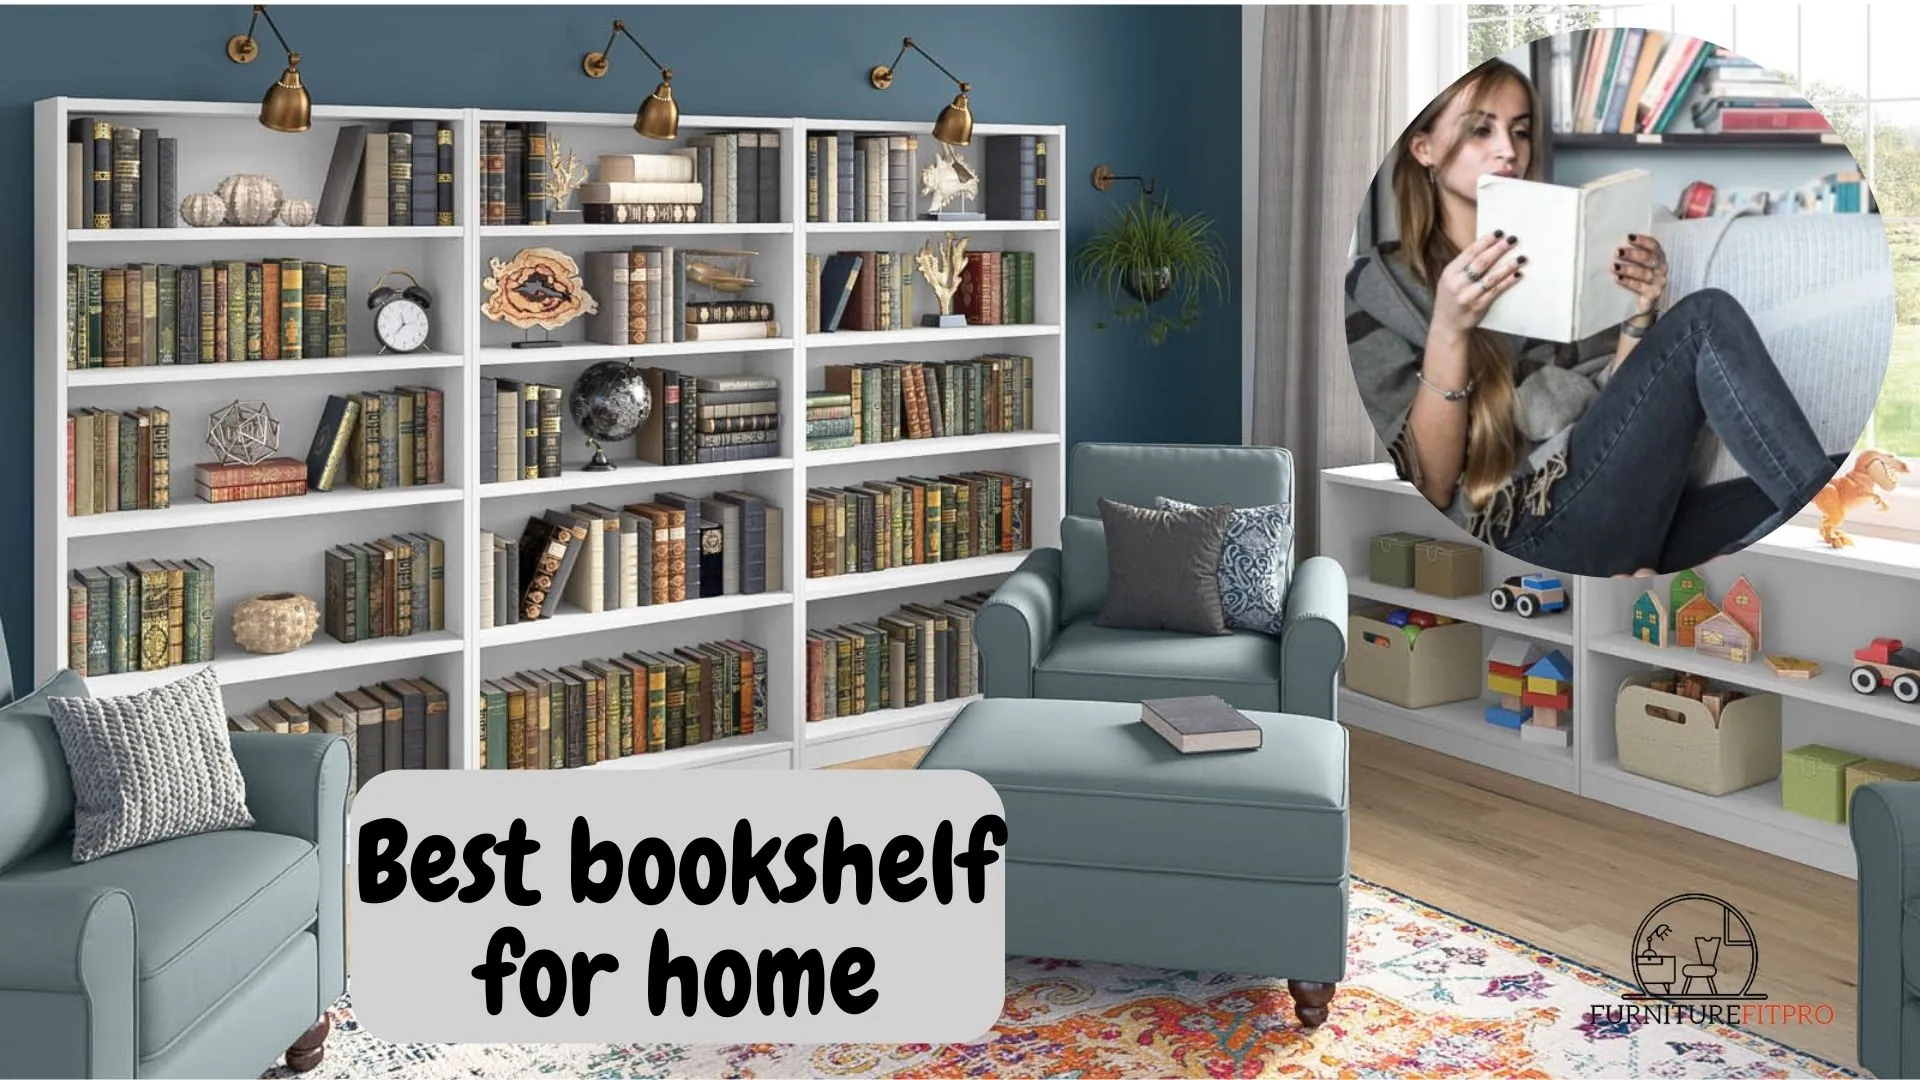 Best bookshelf for home